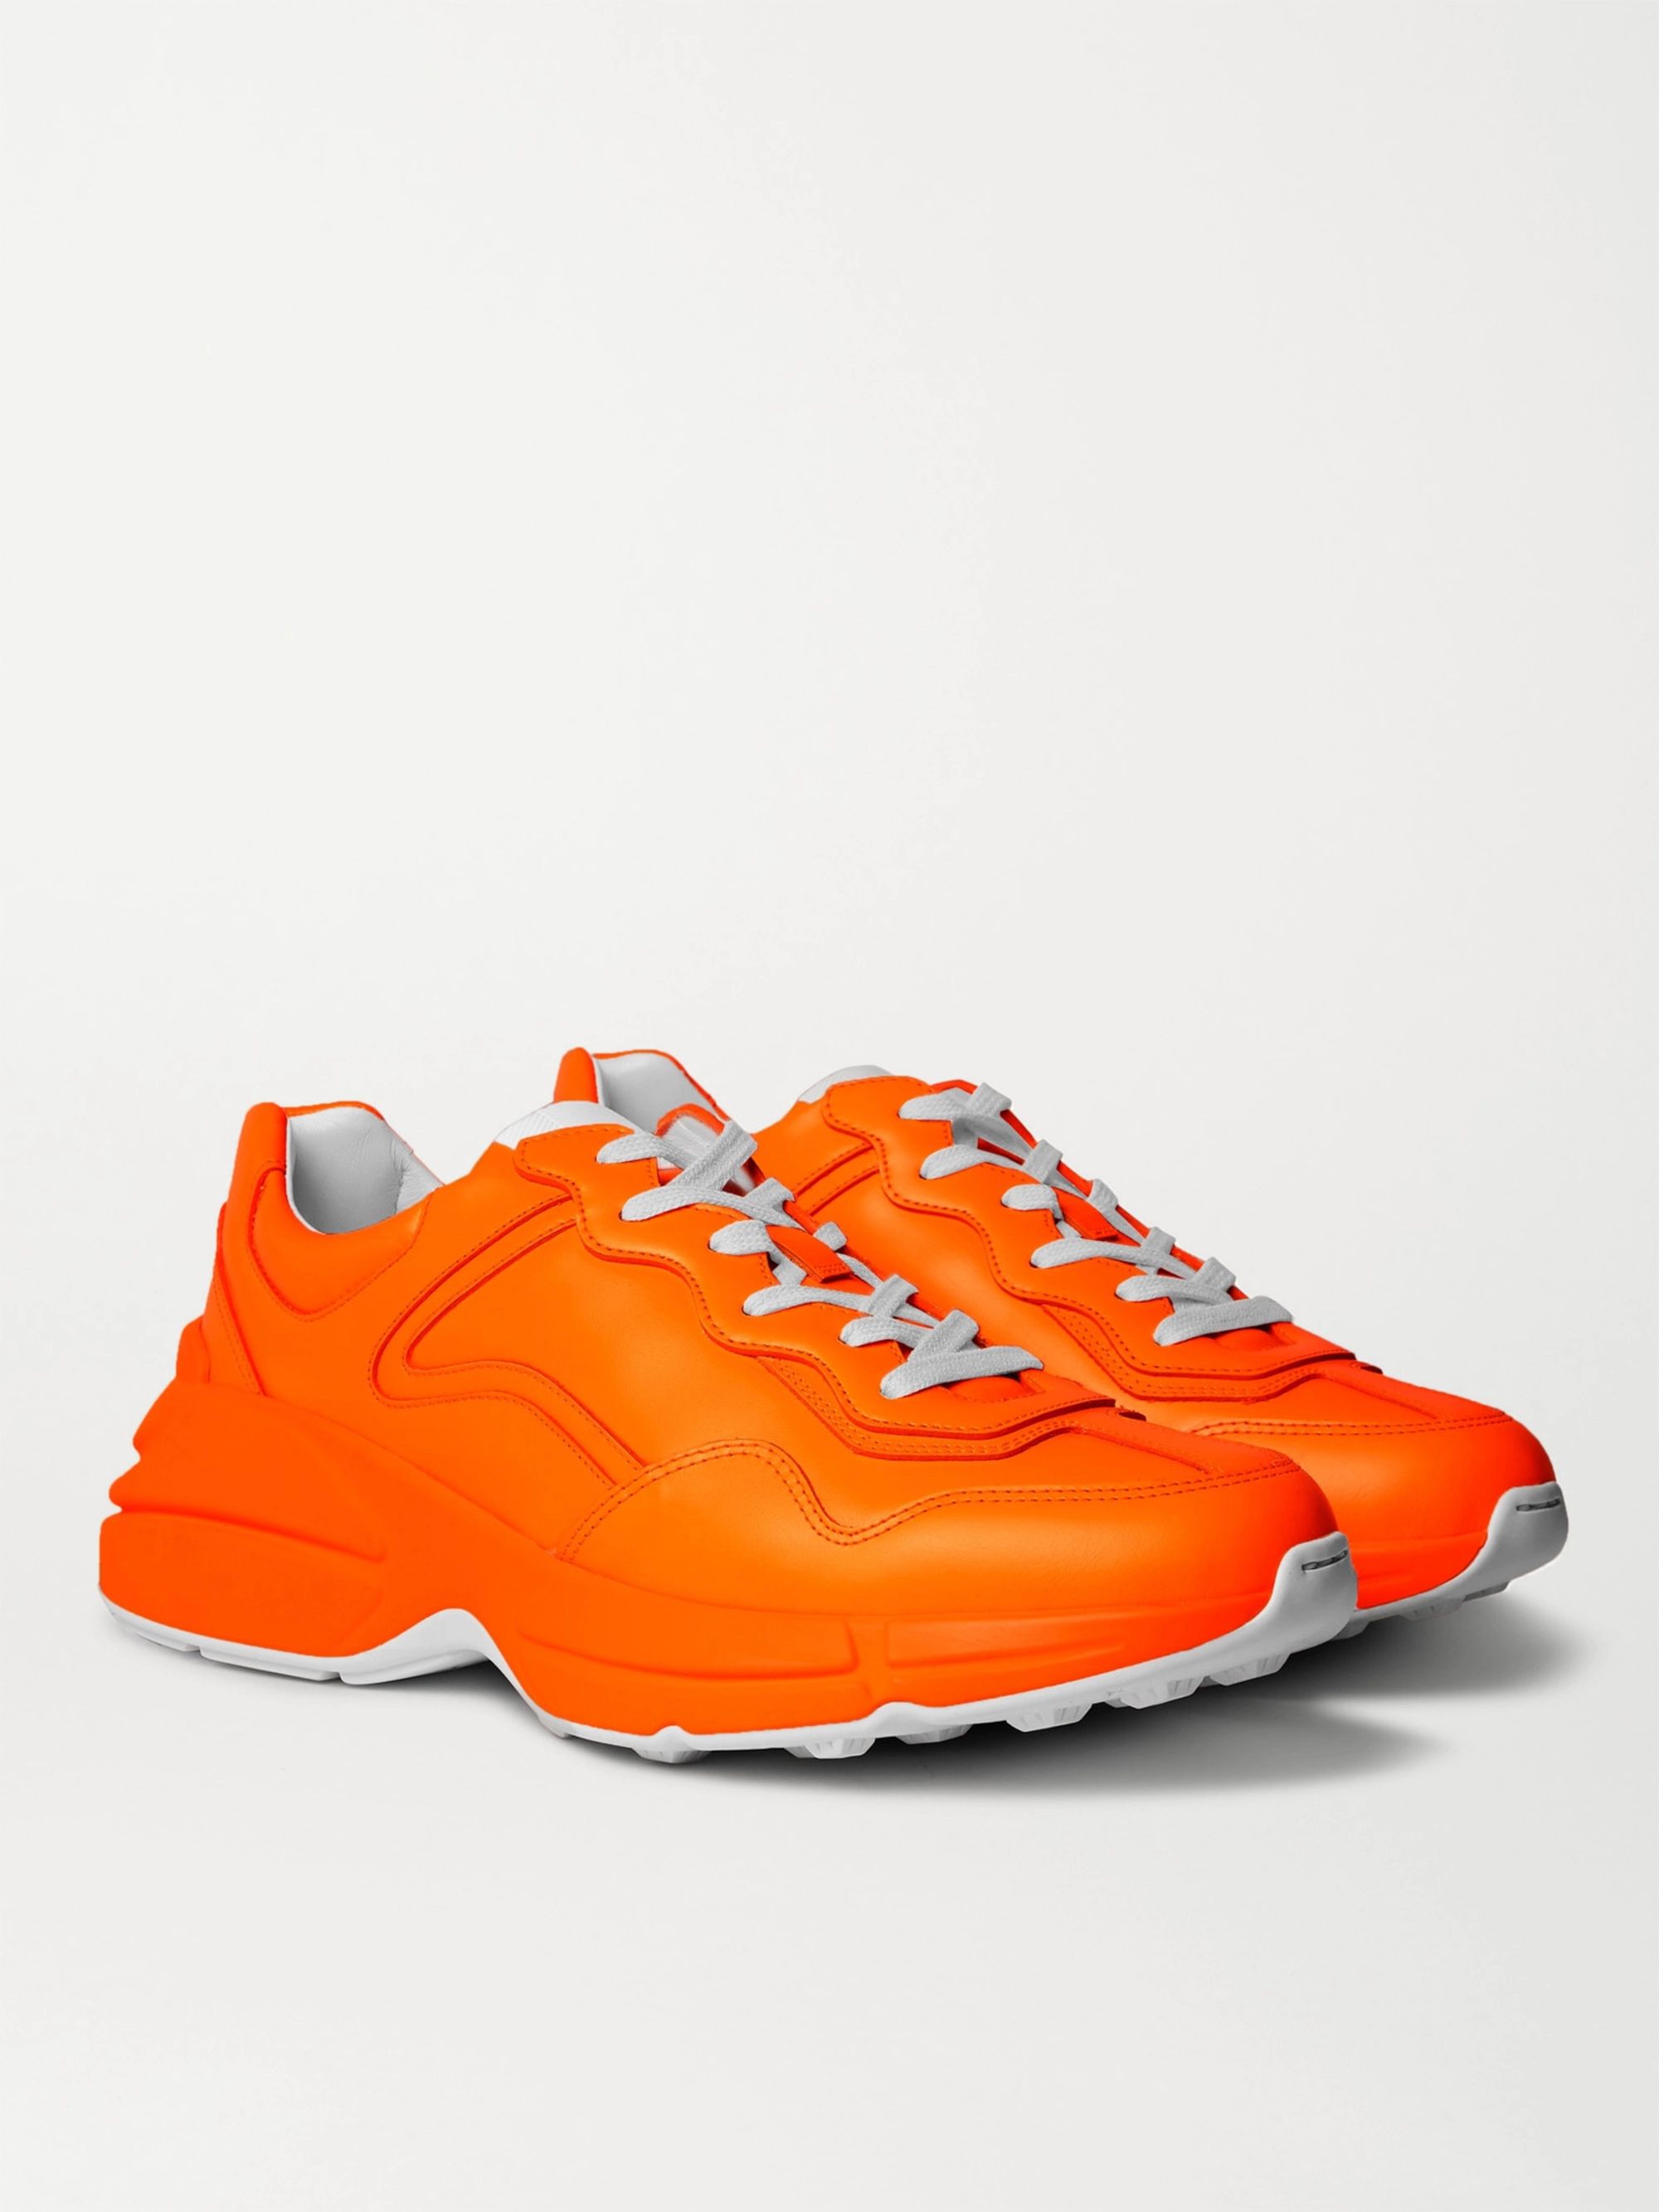 orange gucci sneakers